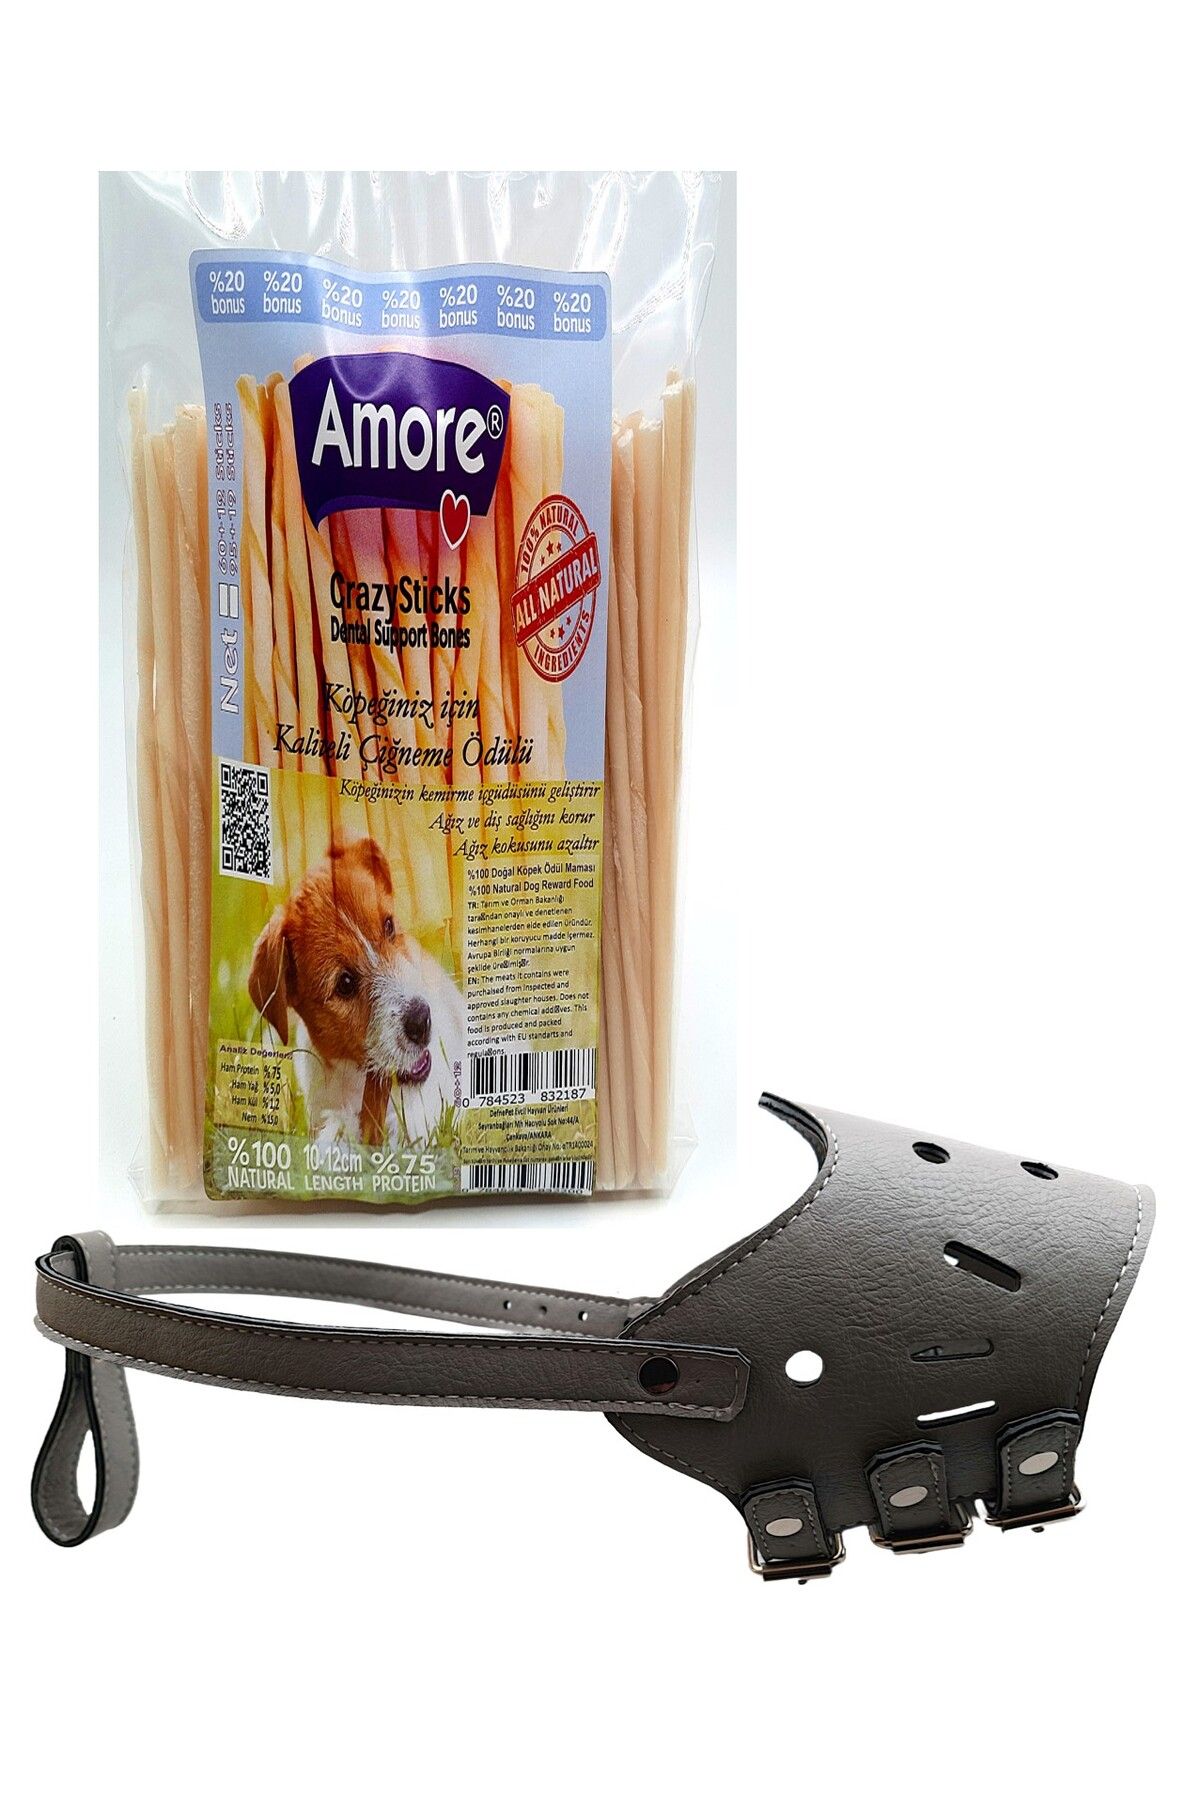 Amoredog Leather Lassie Ayarlanabilir Yumuşacık Uzun Burun Köpek Ağızlığı Grigio, Crazy ödül Sticks 72li